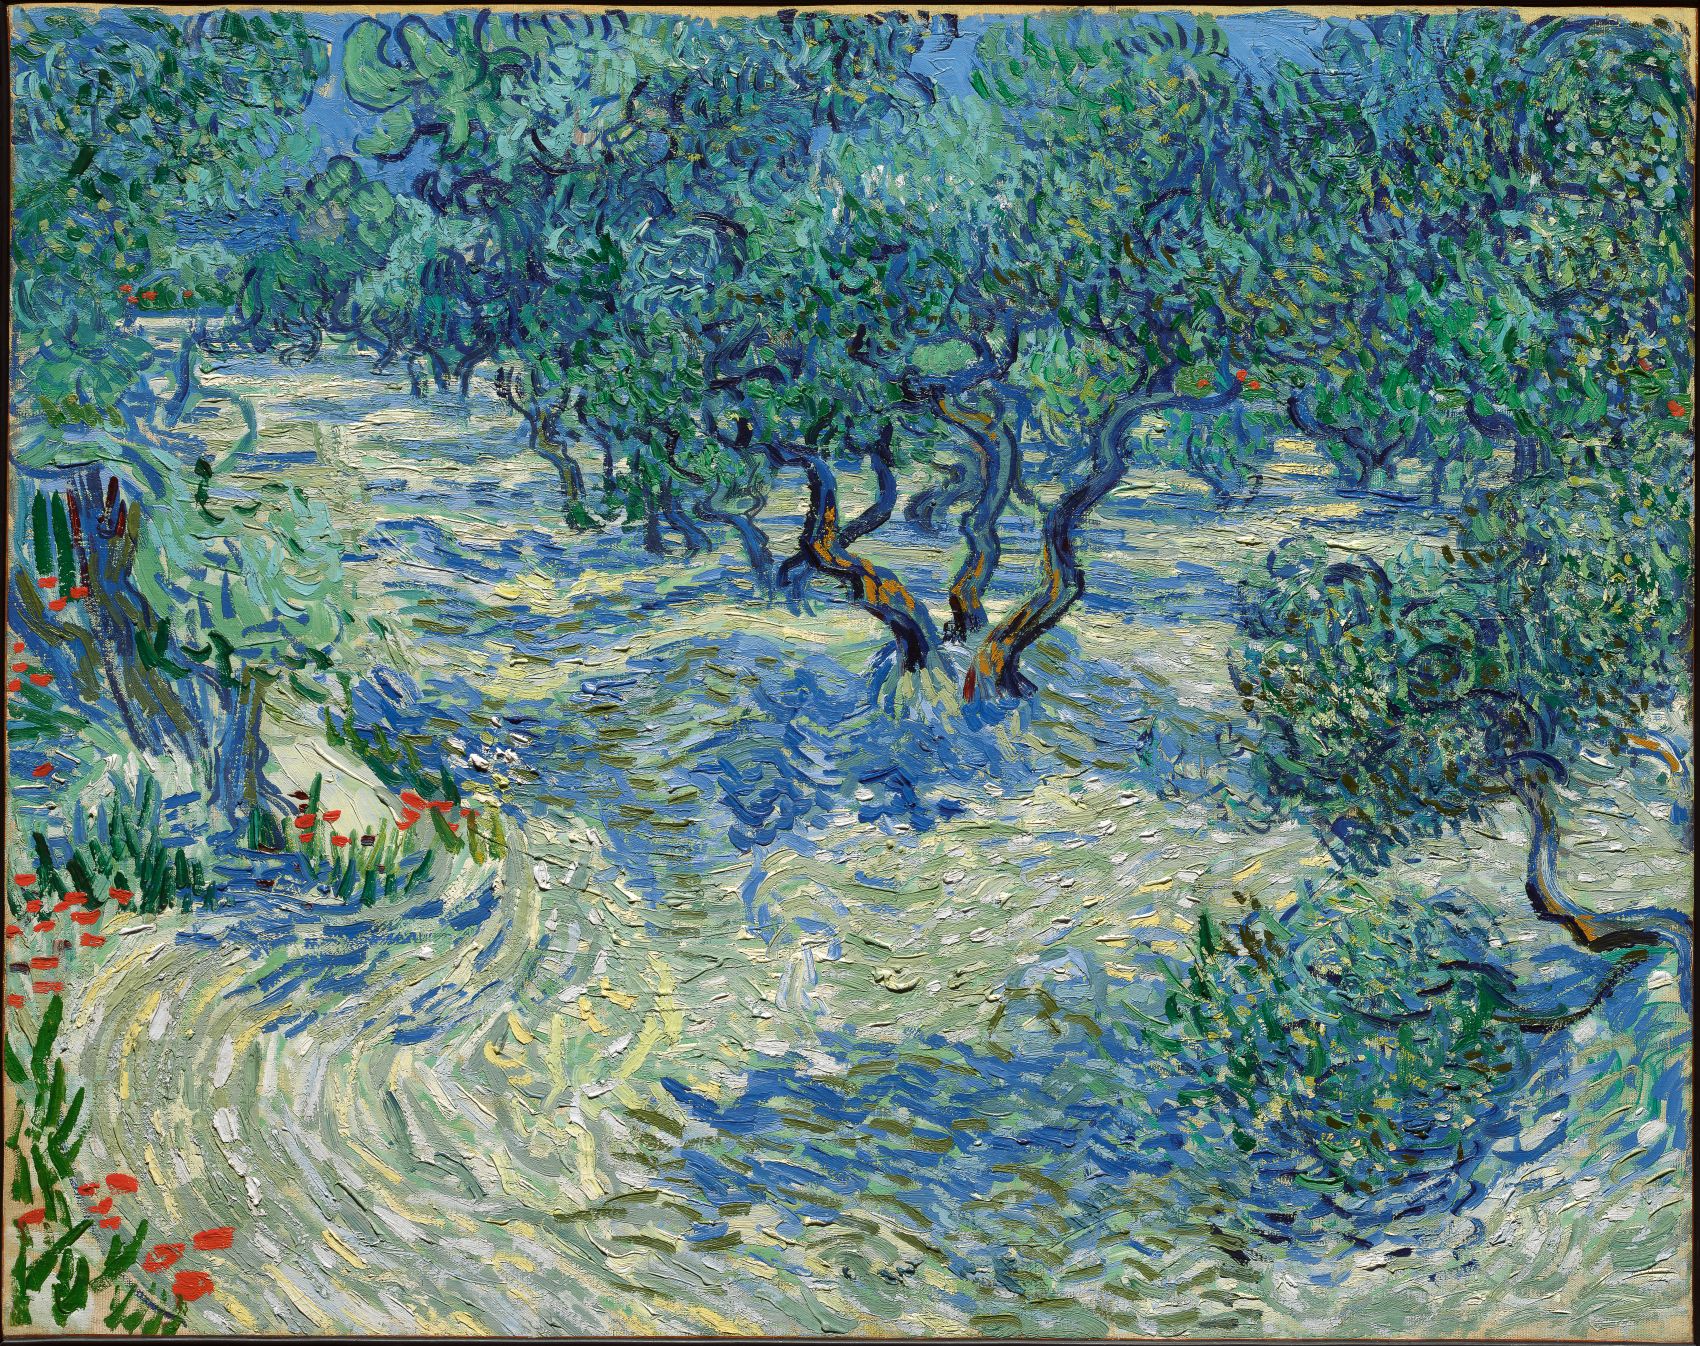 올리브 나무(Olive Trees) by 빈센트 반 고흐 - 1889 - 73.2 cm × 92.2 cm 